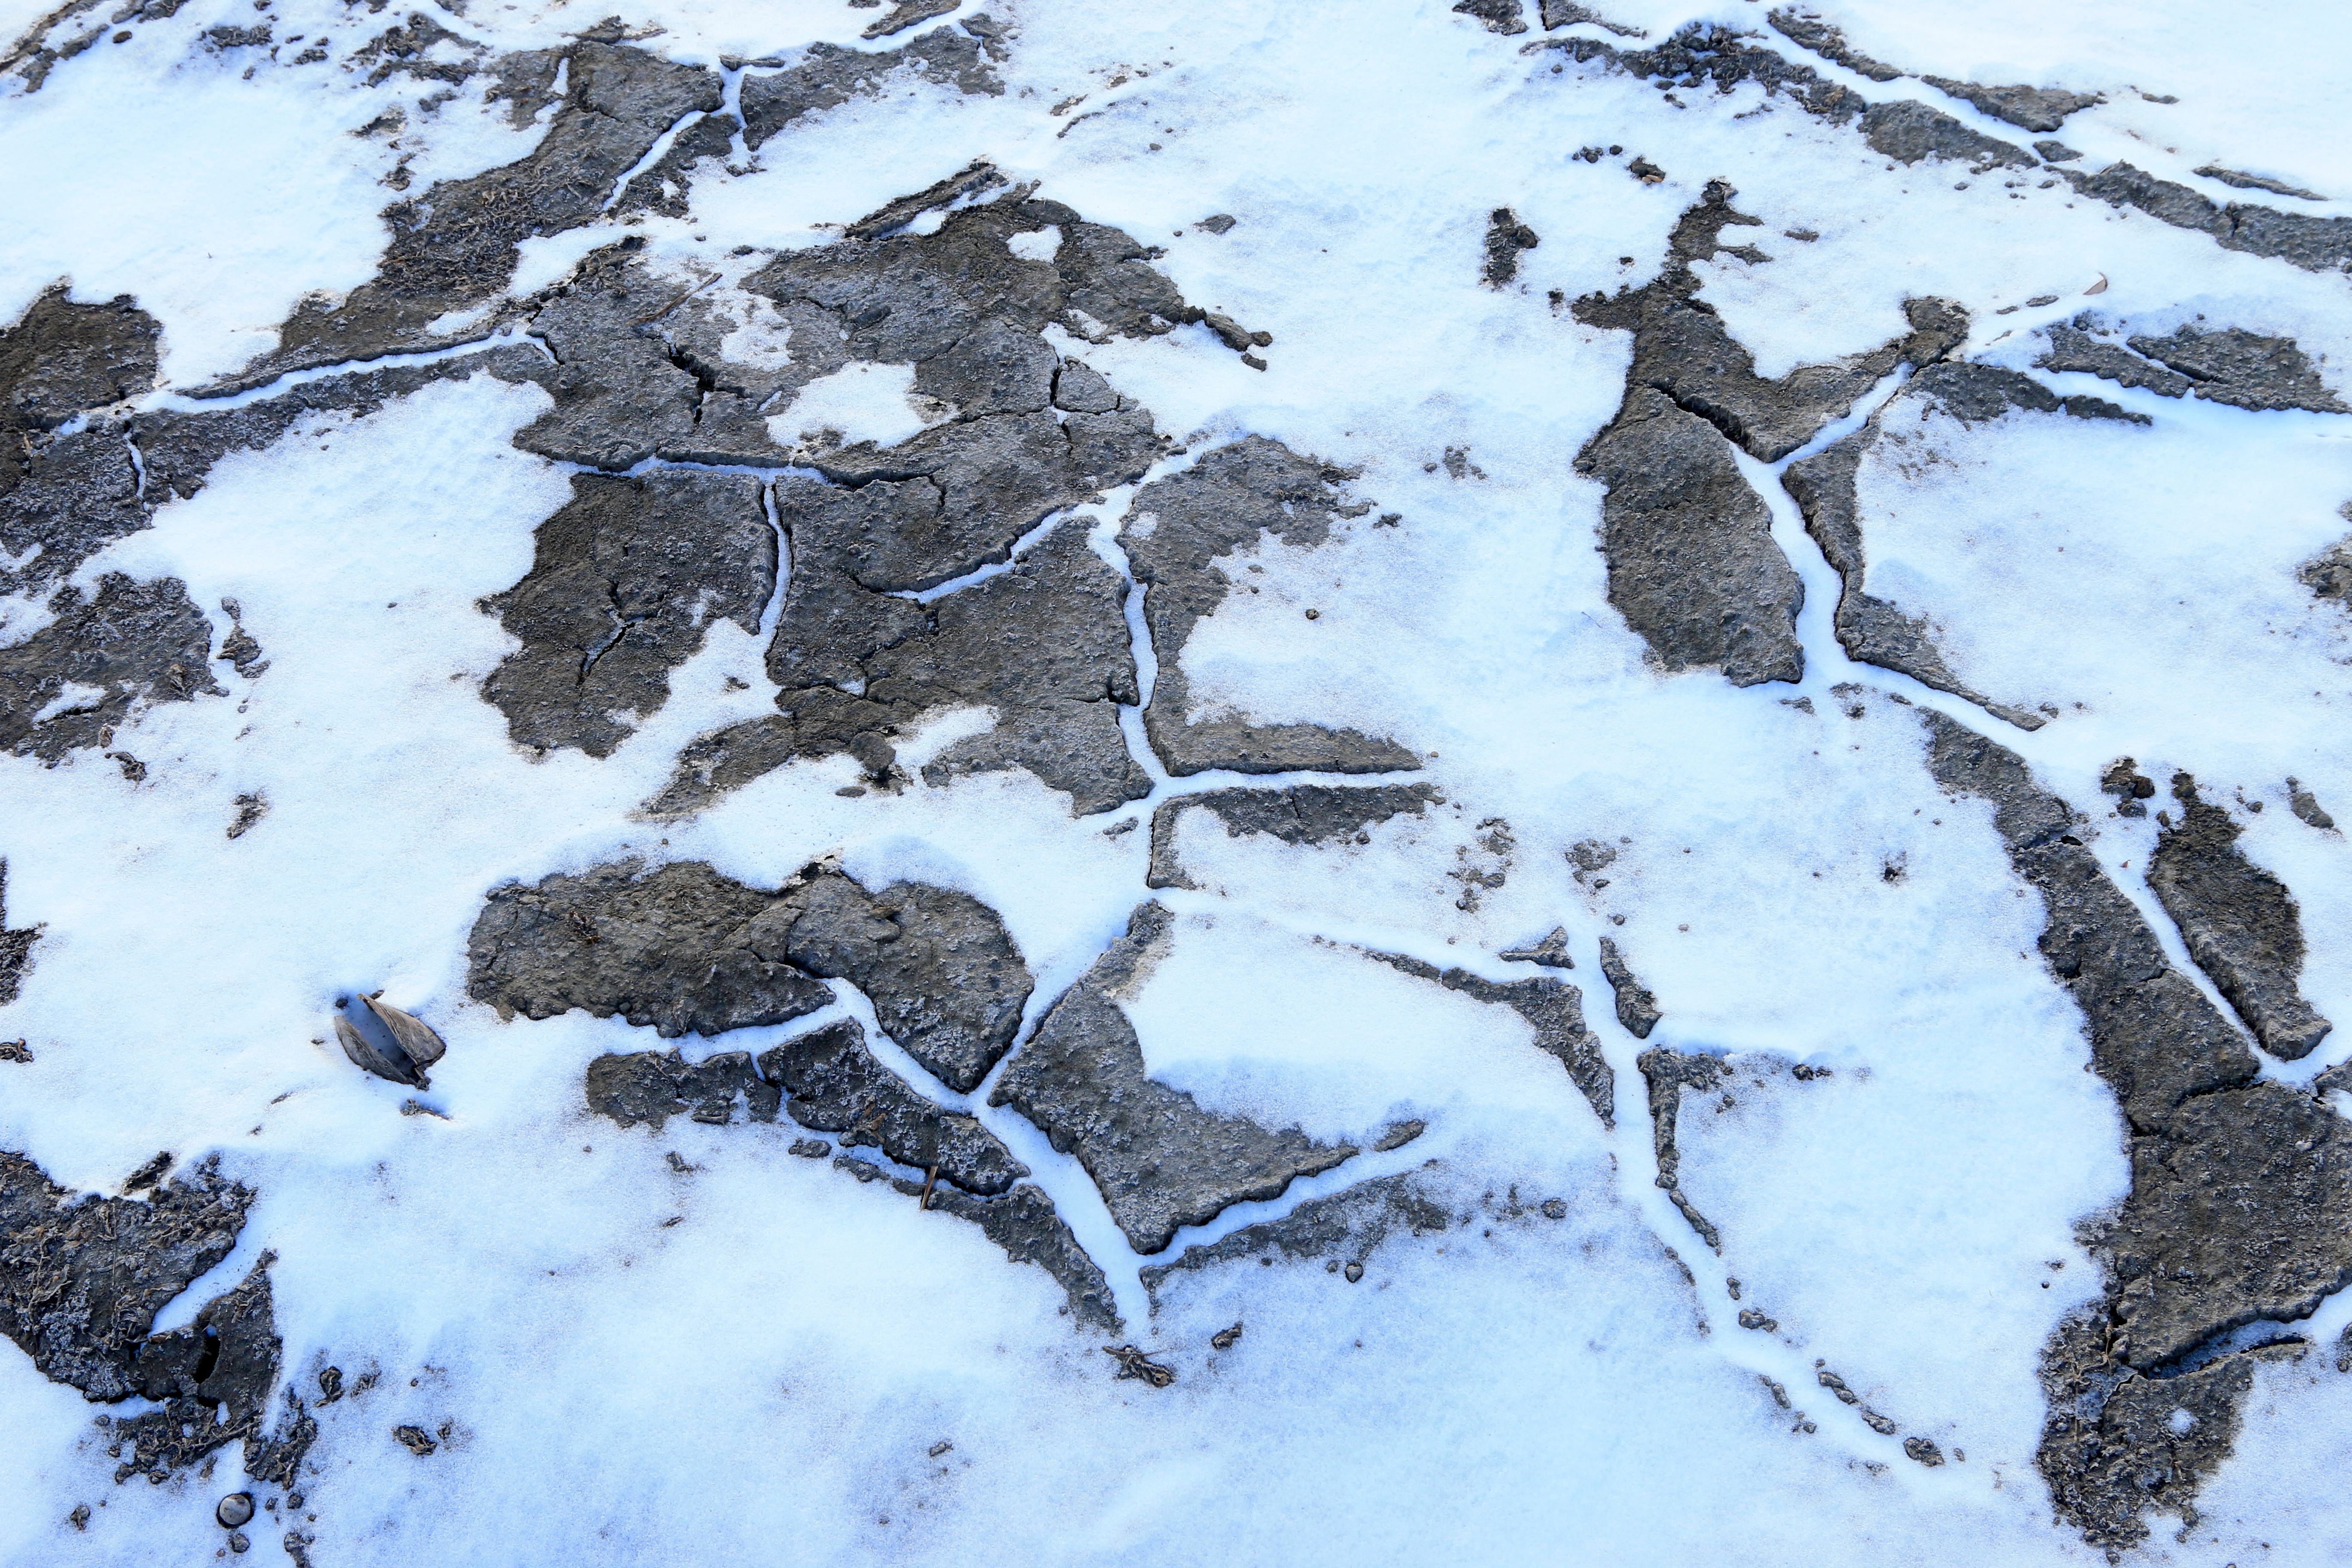 Permafrost im Schnee. Polygone, das typische Muster der Permafrostböden, ist zu erkennen.